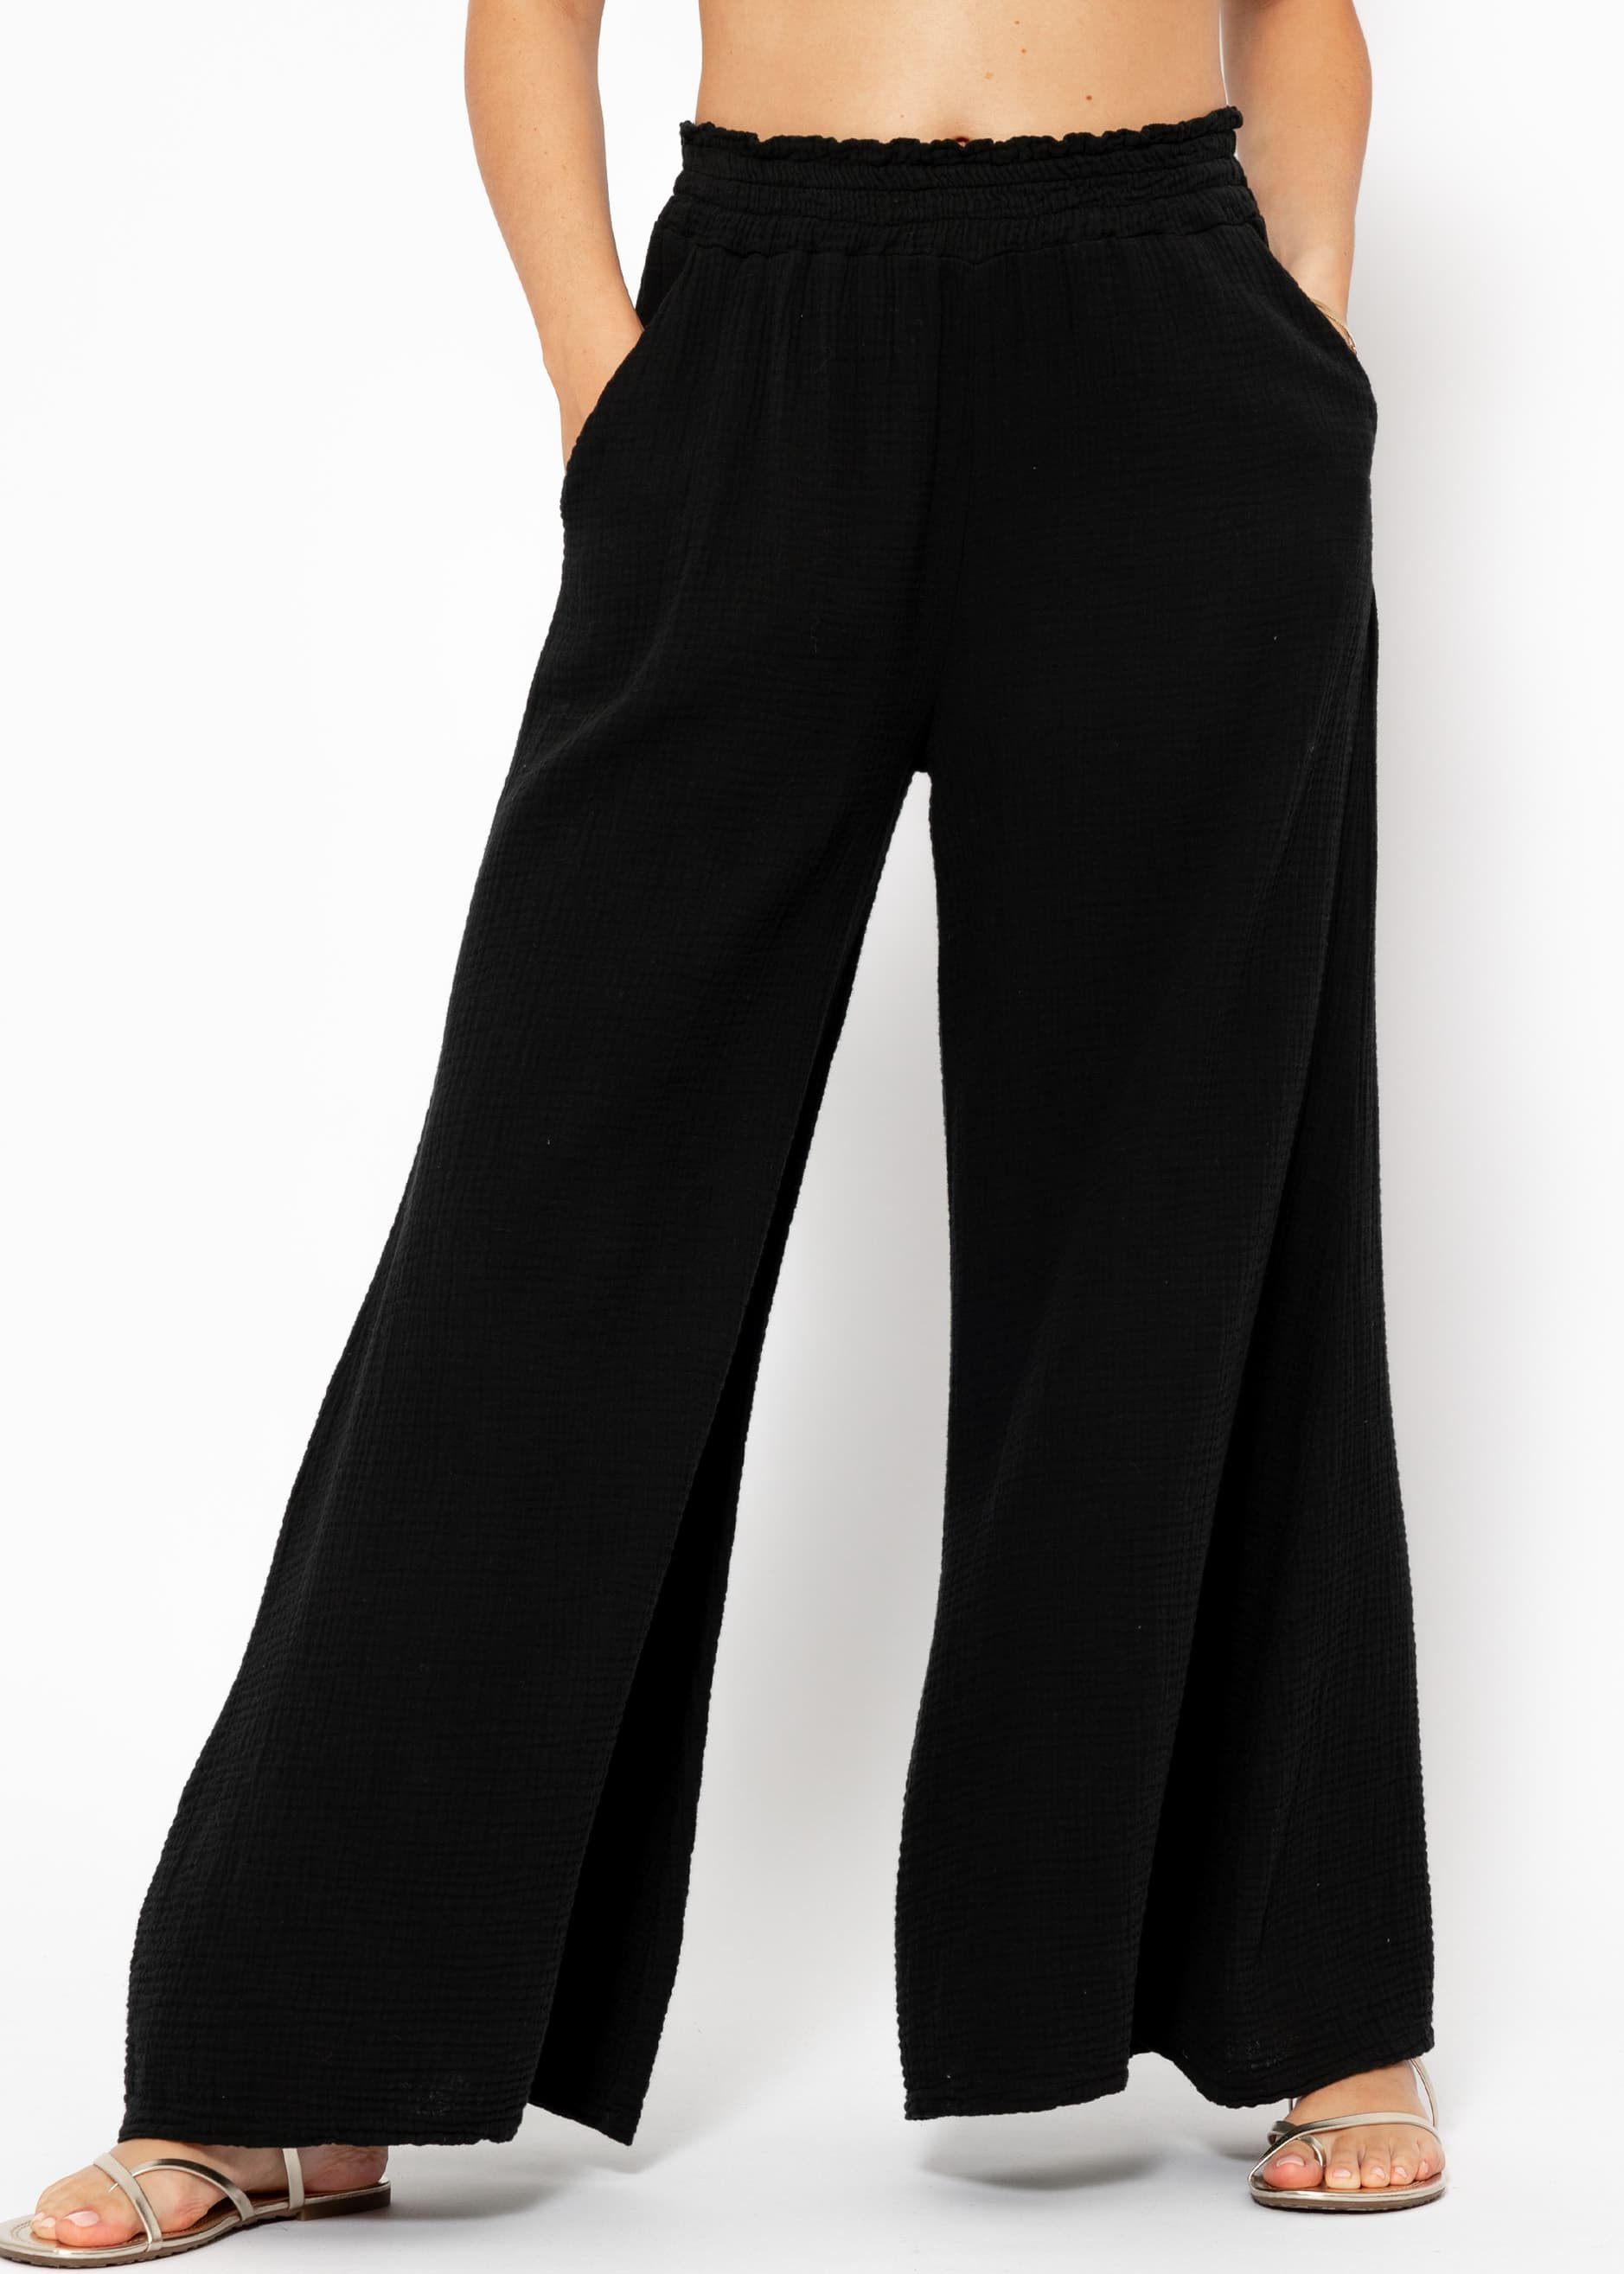 SASSYCLASSY Stoffhose Pants aus Baumwolle mit weitem Bein 100 % Baumwolle, atmungsaktiv und elastischen Bund, sehr leicht